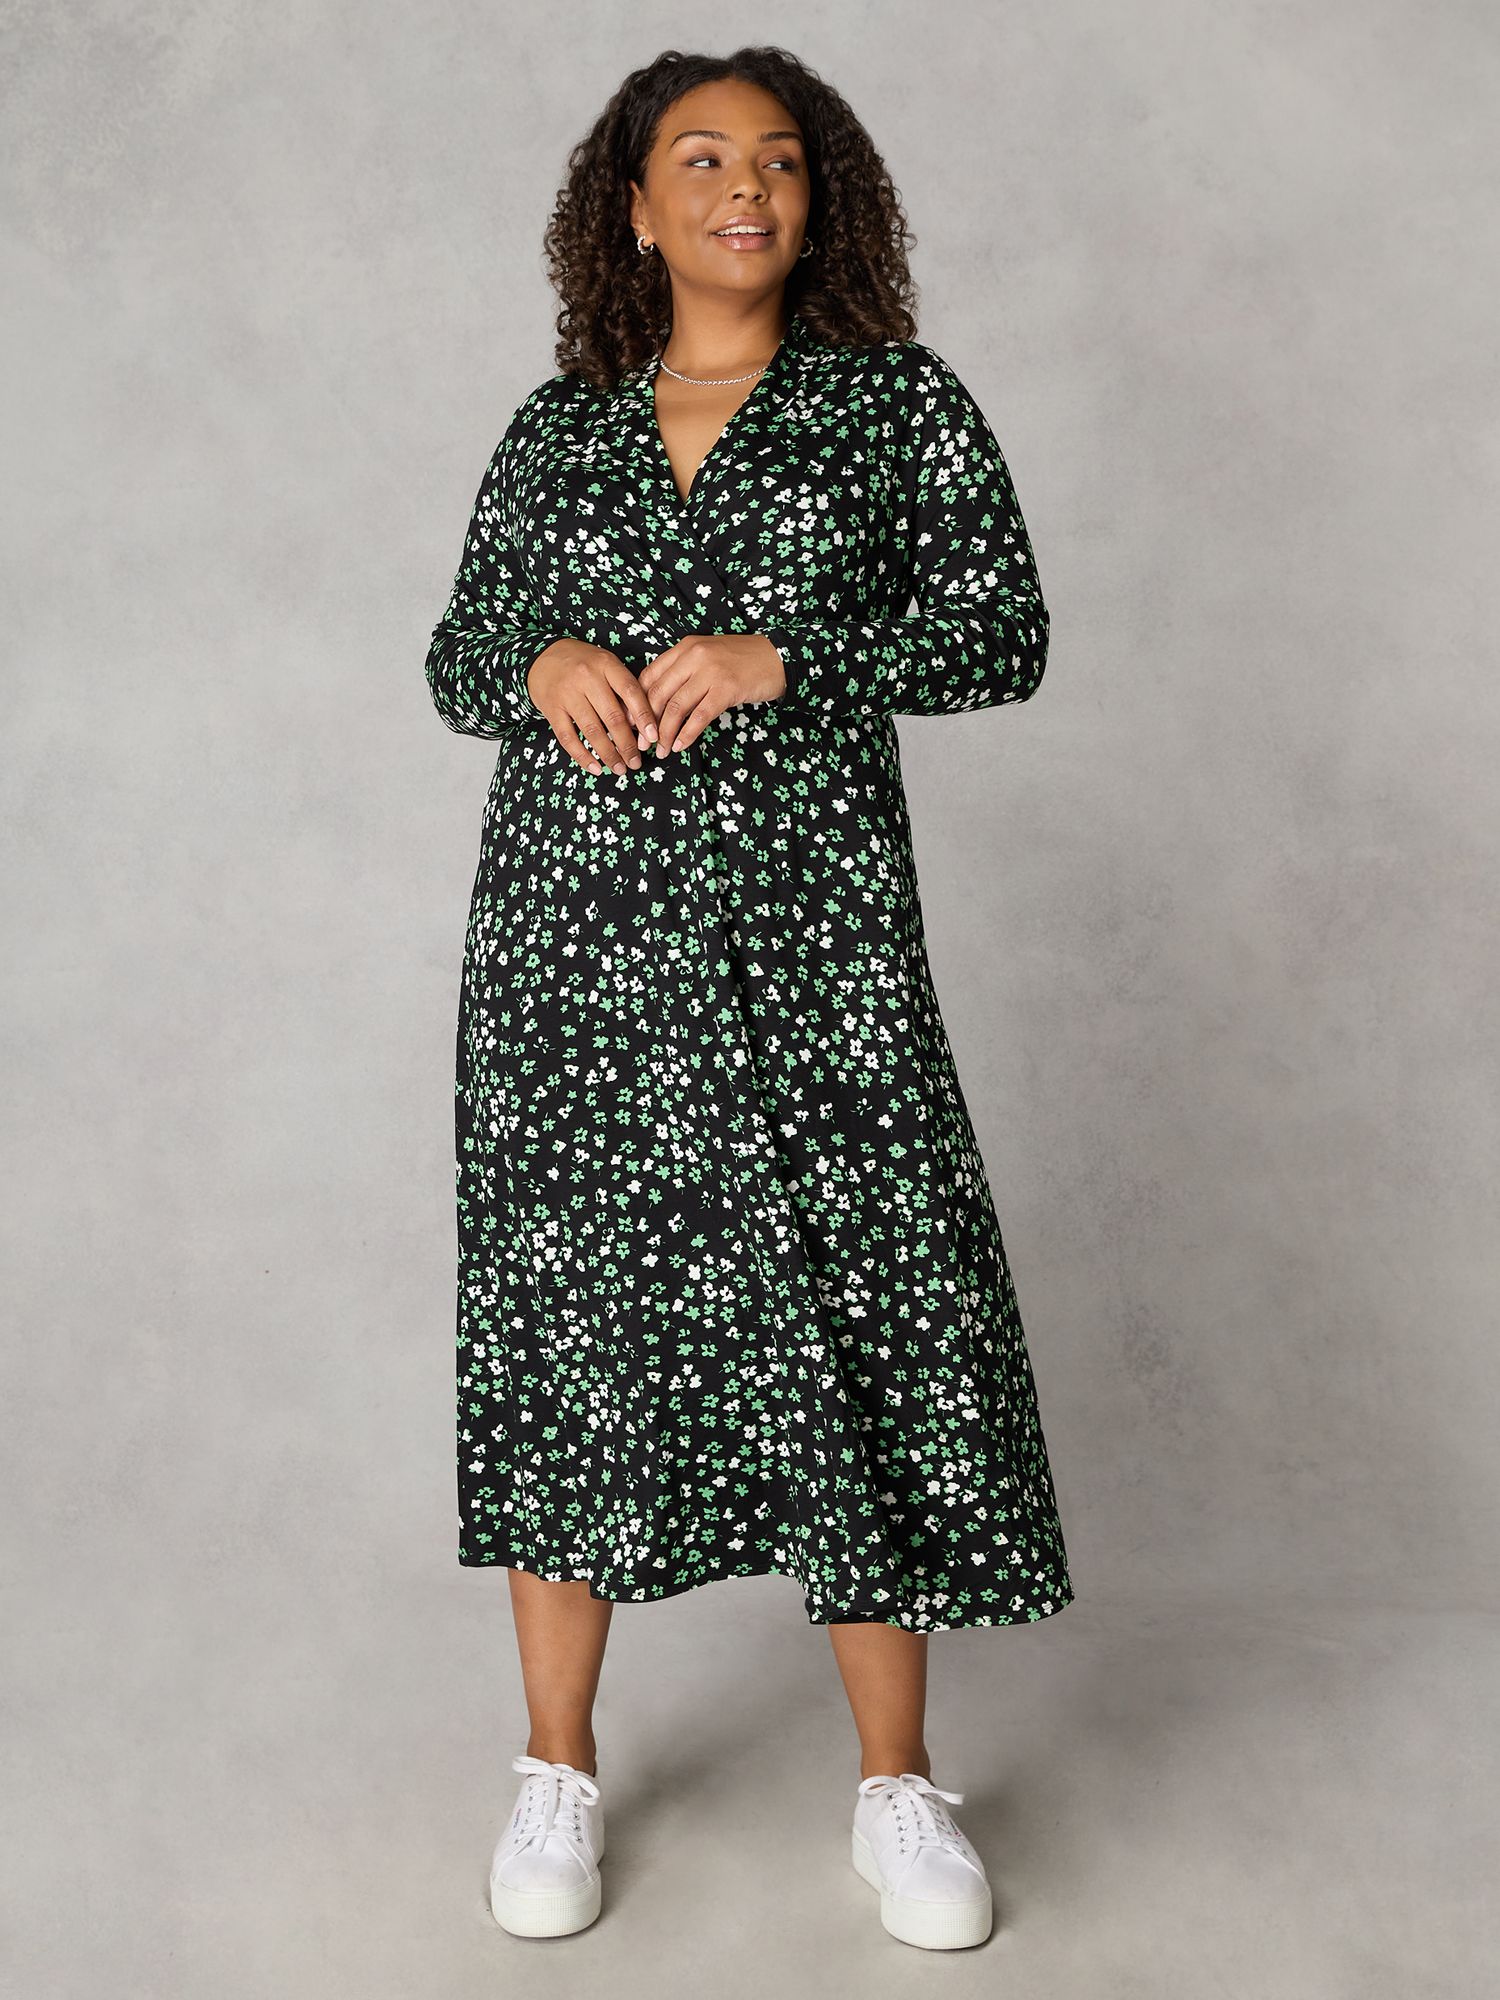 Платье миди с принтом Ditsy Live Unlimited, зеленый/мульти женское плиссированное платье средней длины элегантное однотонное платье большого размера с глубоким v образным вырезом оборками и рукав